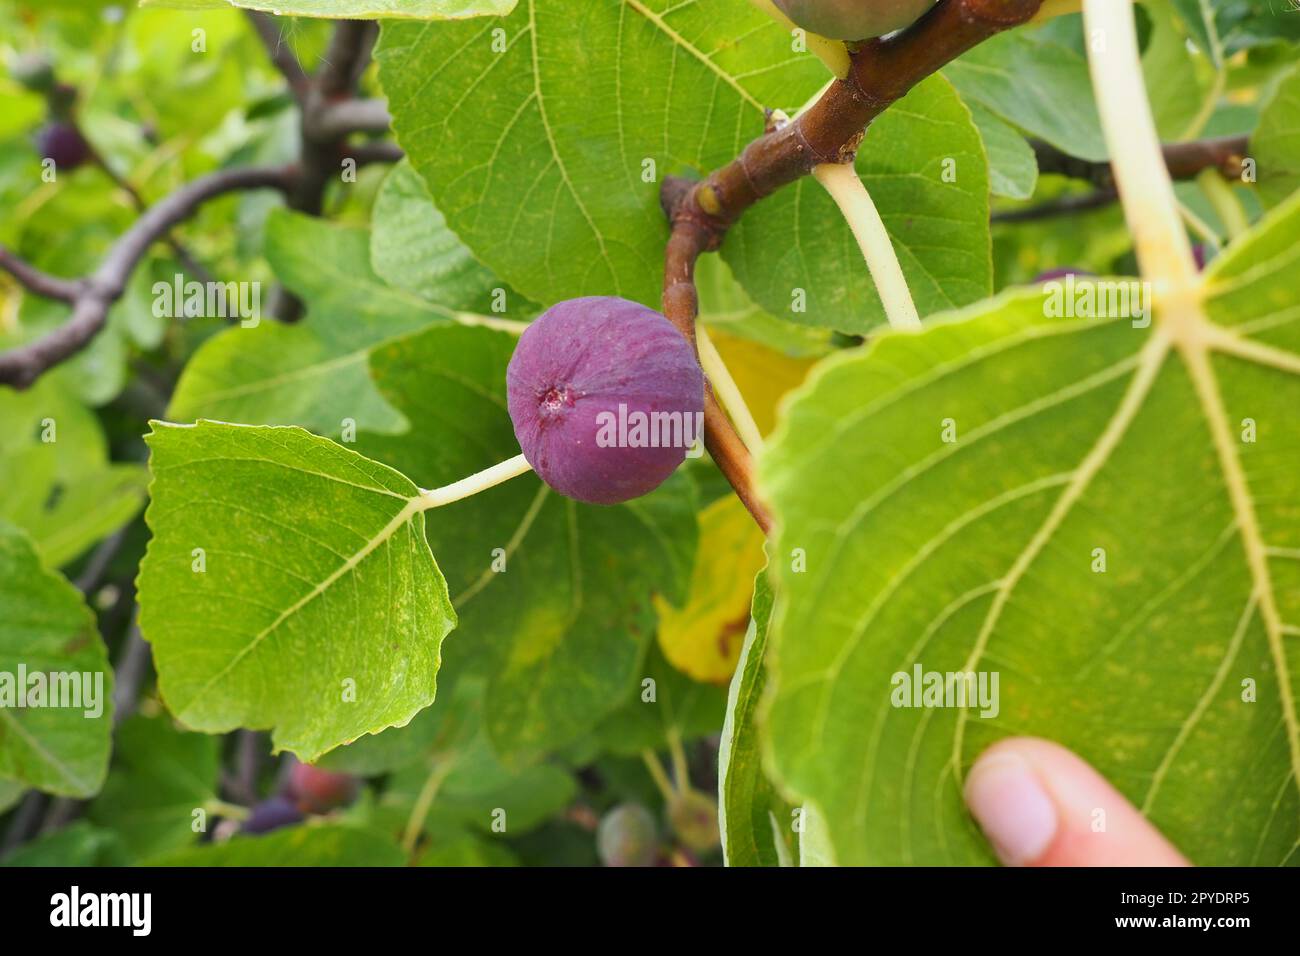 Feigenbaum Ficus carica ist eine subtropische Laubpflanze der Gattung Ficus der Familie Mulberry. Feigen auf einem Ast. Gartenpflanzen. Reife grüne rote Feige in einem Garten oder Bauernhof Stockfoto